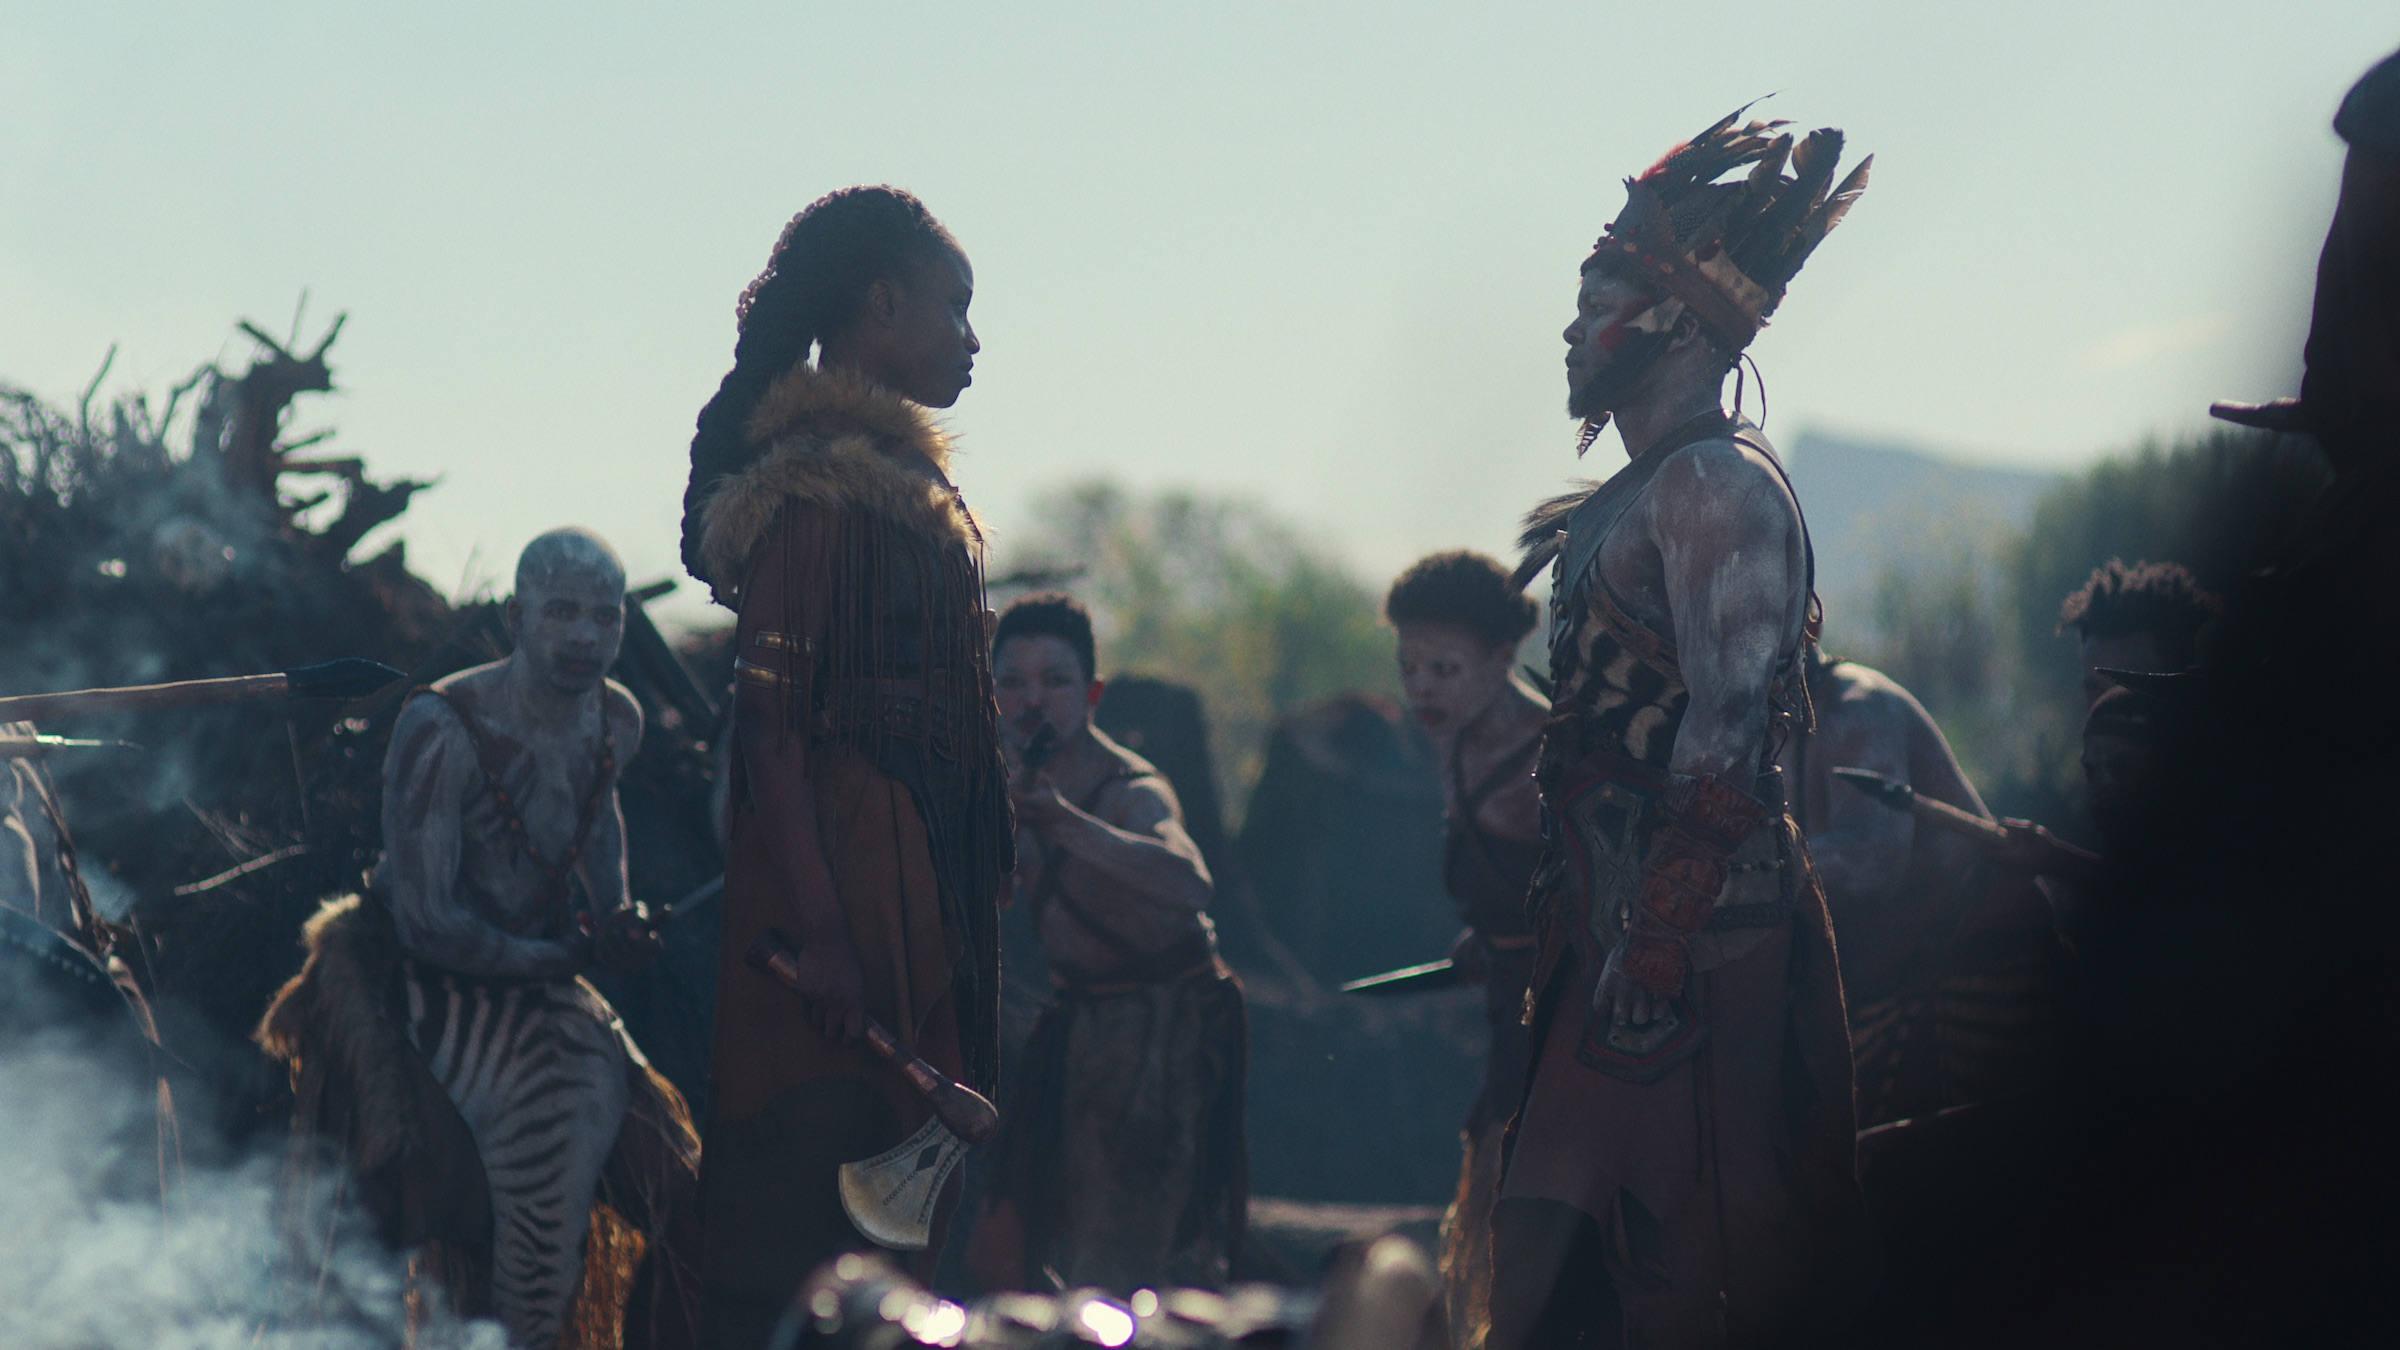 Njinga (Adesuwa Oni) faces off with the Imbangala warrior Kasa (Thabo Thabo Rametsi). (Courtesy of Netflix)